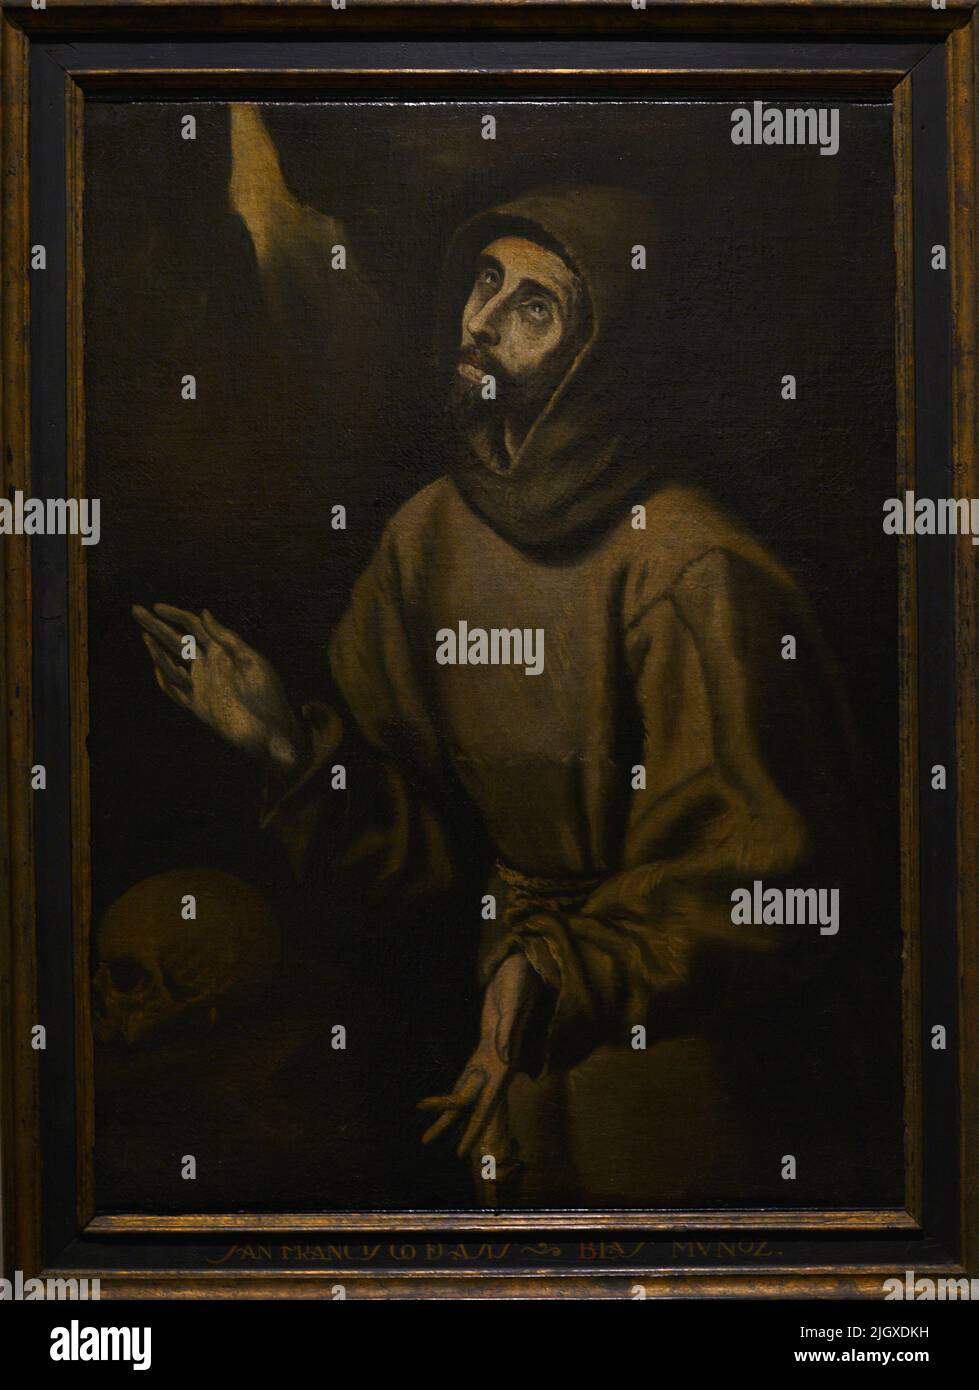 Franz von Assisi (1181-1226). Gründer des Franziskanerordens. Die Ekstase des hl. Franz von Assisi, ca. 1685, von Blas Muñoz (1626-1700). Öl auf Leinwand. El Greco Museum. Toledo, Spanien. Stockfoto